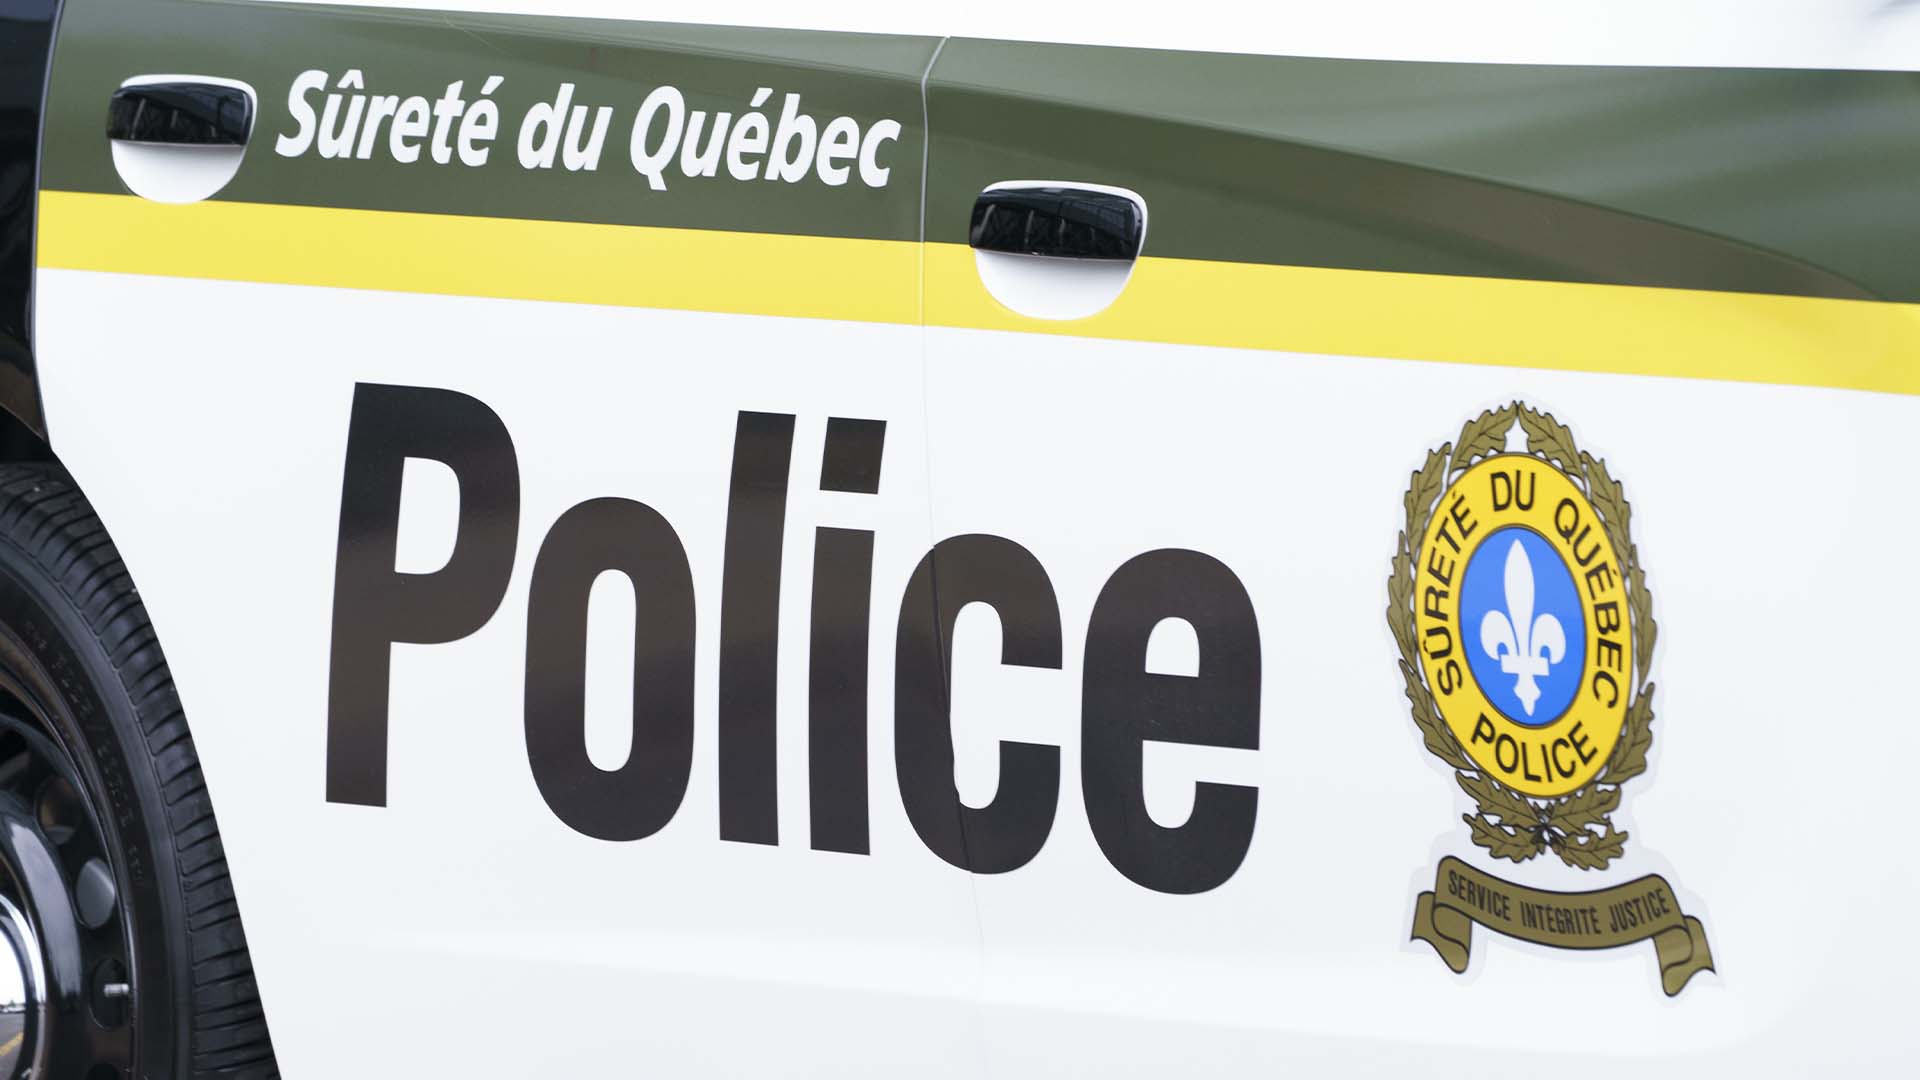 Une dizaine de perquisitions ont été réalisées par les policiers de la Sûreté du Québec (SQ) dans les secteurs de Drummondville, Saint-Germain-de-Grantham, Saint-Sulpice et Terrebonne. L'objectif était entre autres de démanteler un réseau de trafic de stupéfiants et de sévir contre la vente de tabac de contrebande.